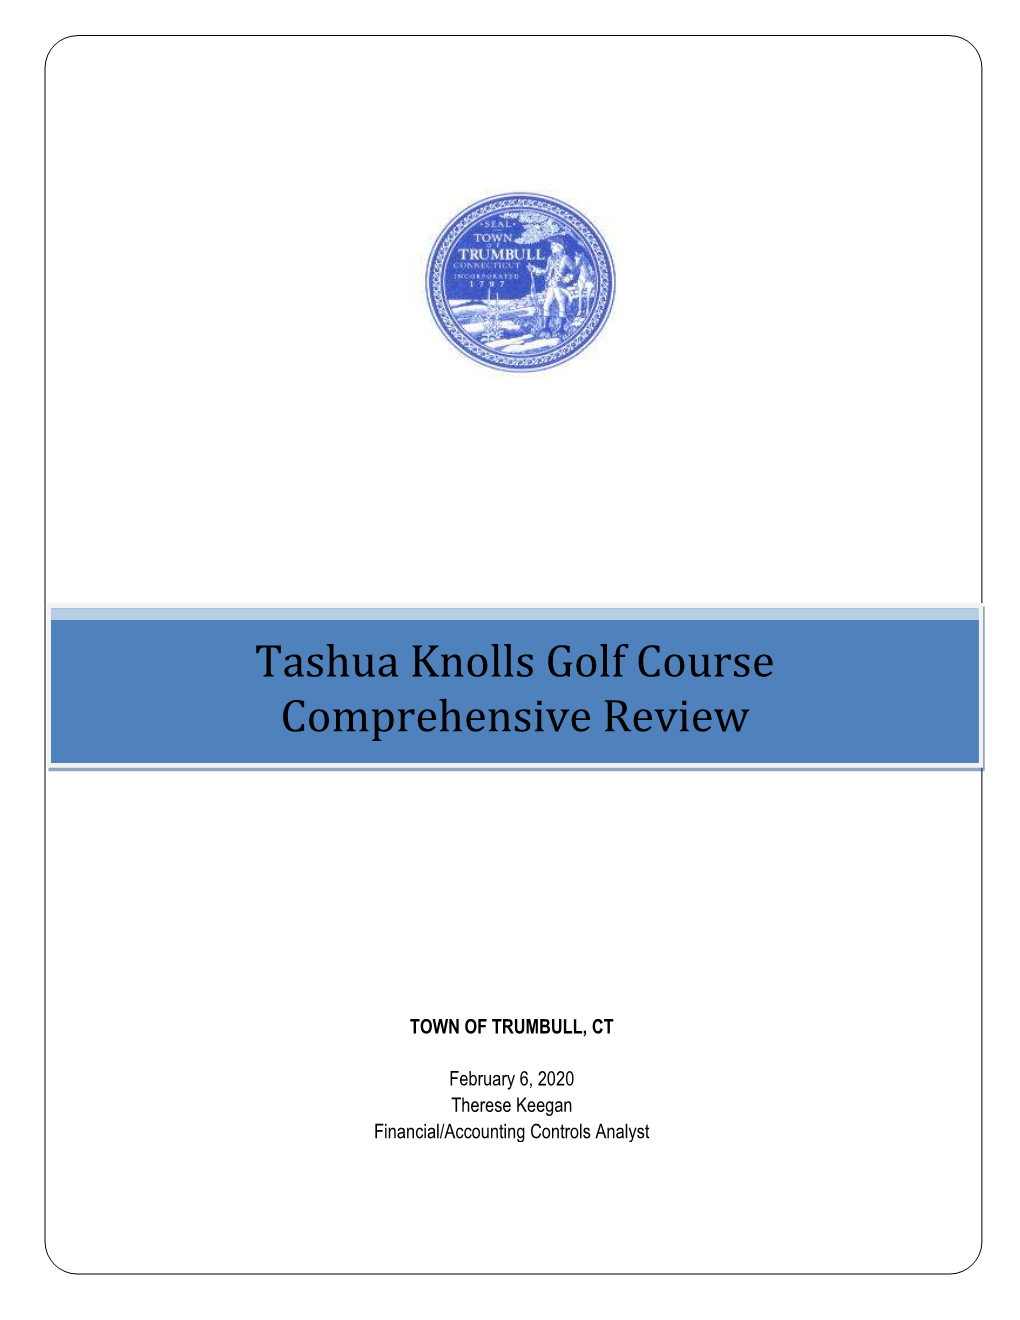 Tashua Knolls Golf Course Comprehensive Review